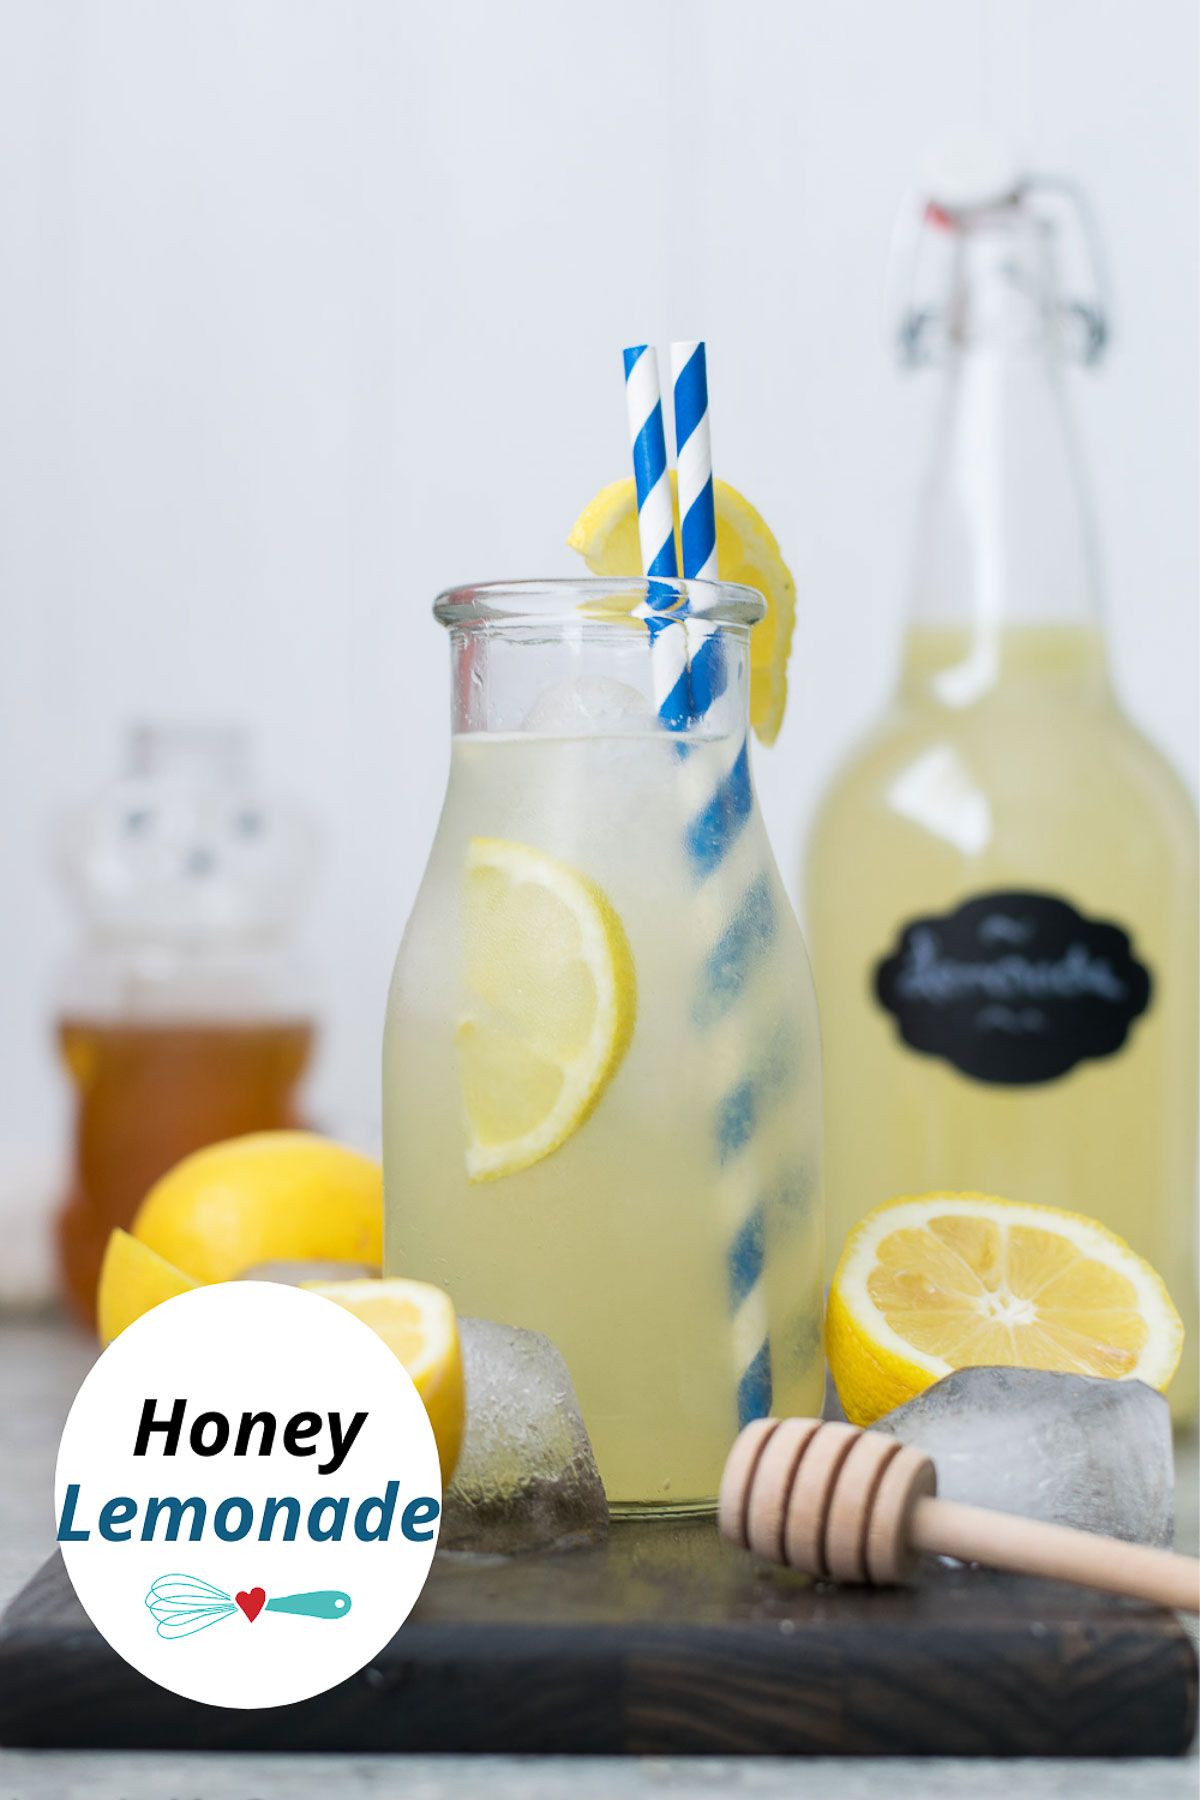 Easy Honey Lemonade